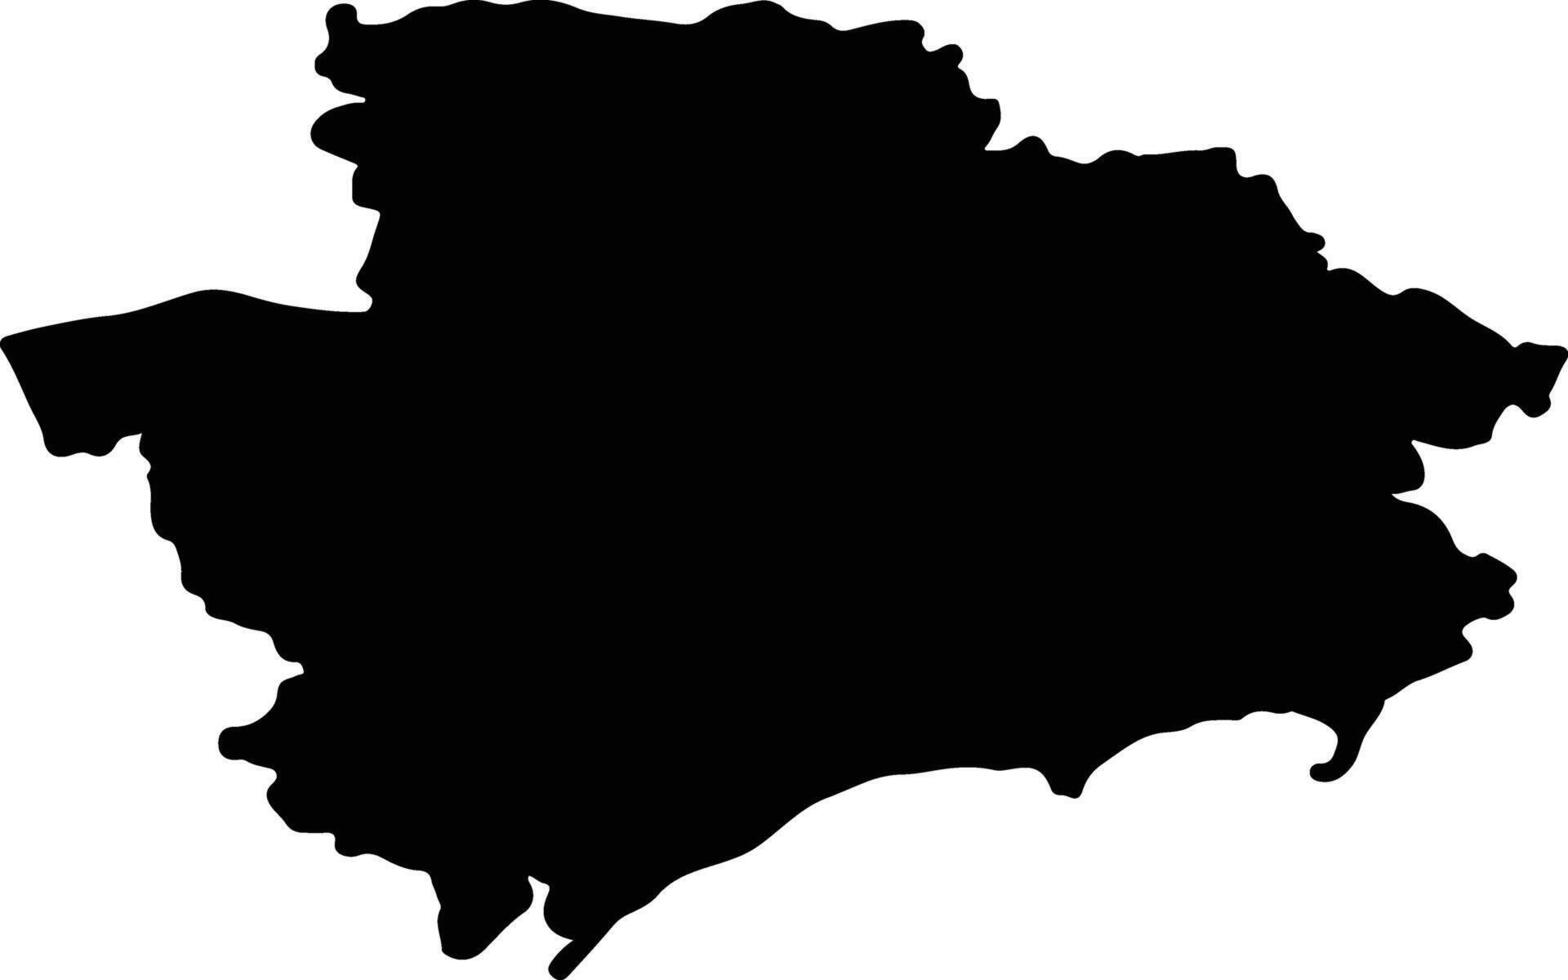 Zaporizhzhya Ukraine silhouette map vector